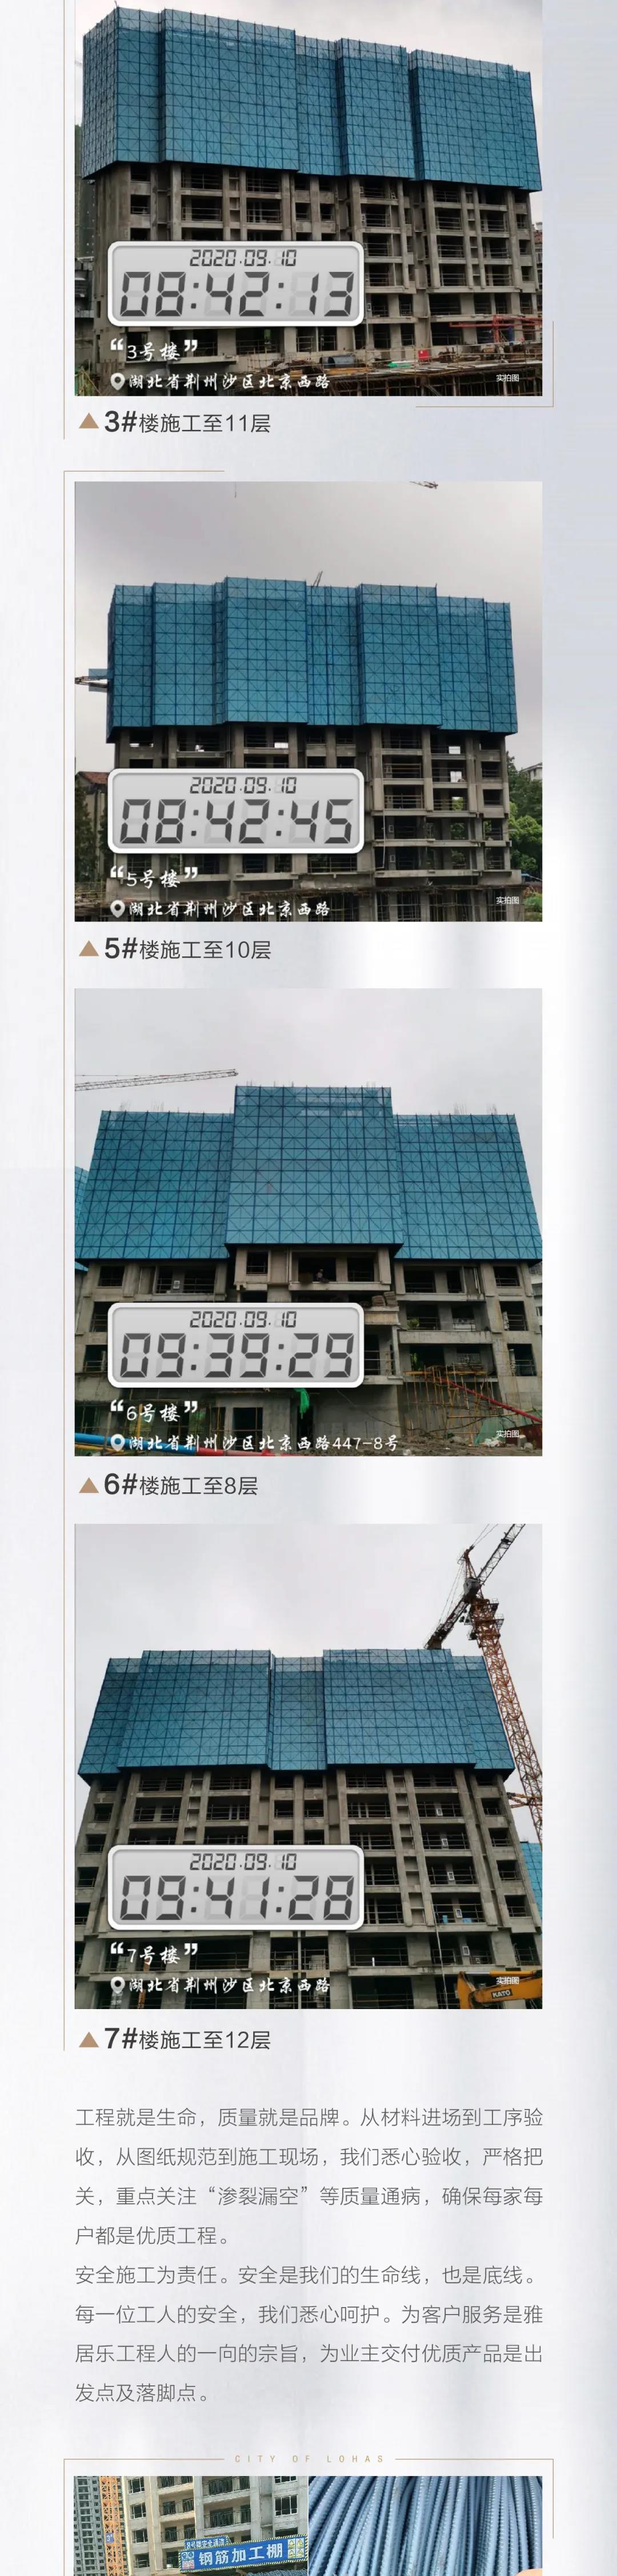 雅居乐锦城 |9月项目进度 1、2、8、9#楼封顶